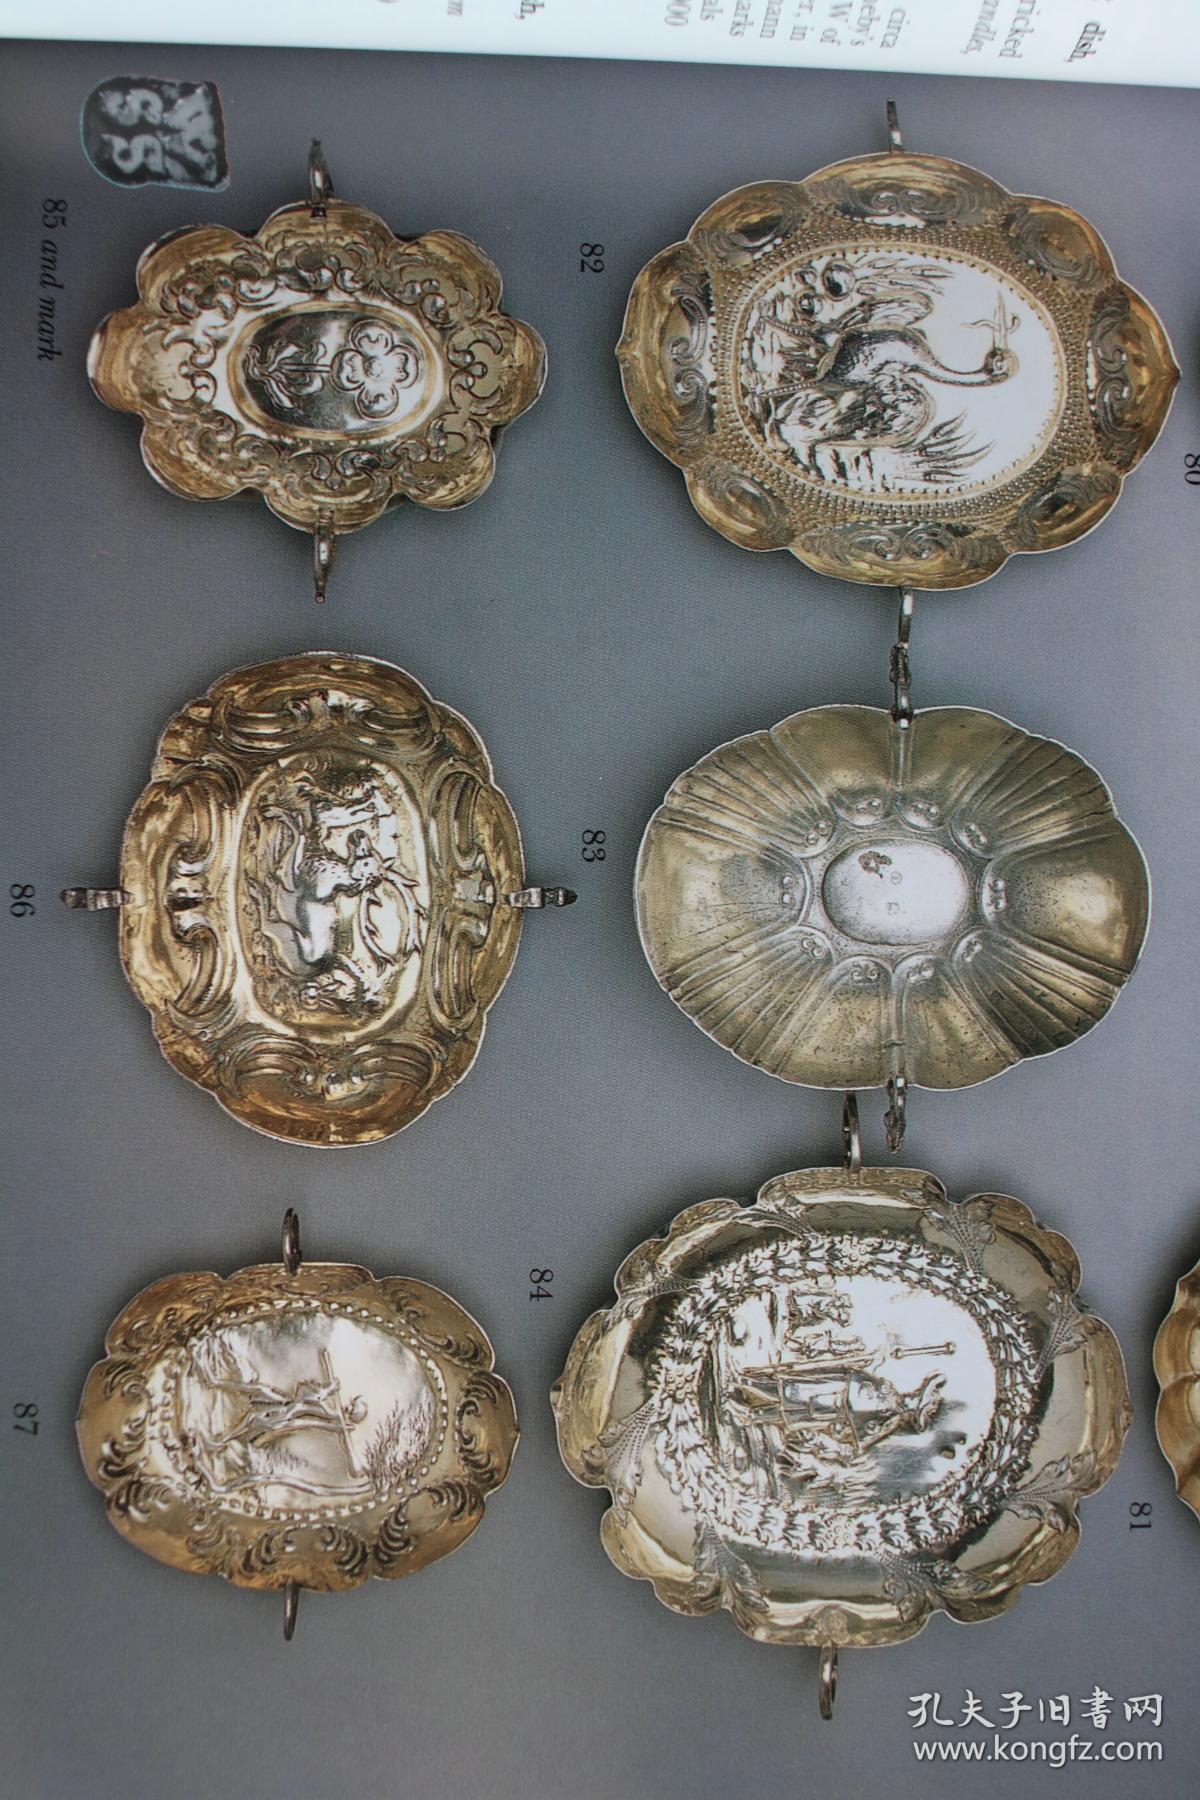 热珠宝》图录,大量西方古典精品金银器和各国皇室皆视为珍品的法贝热